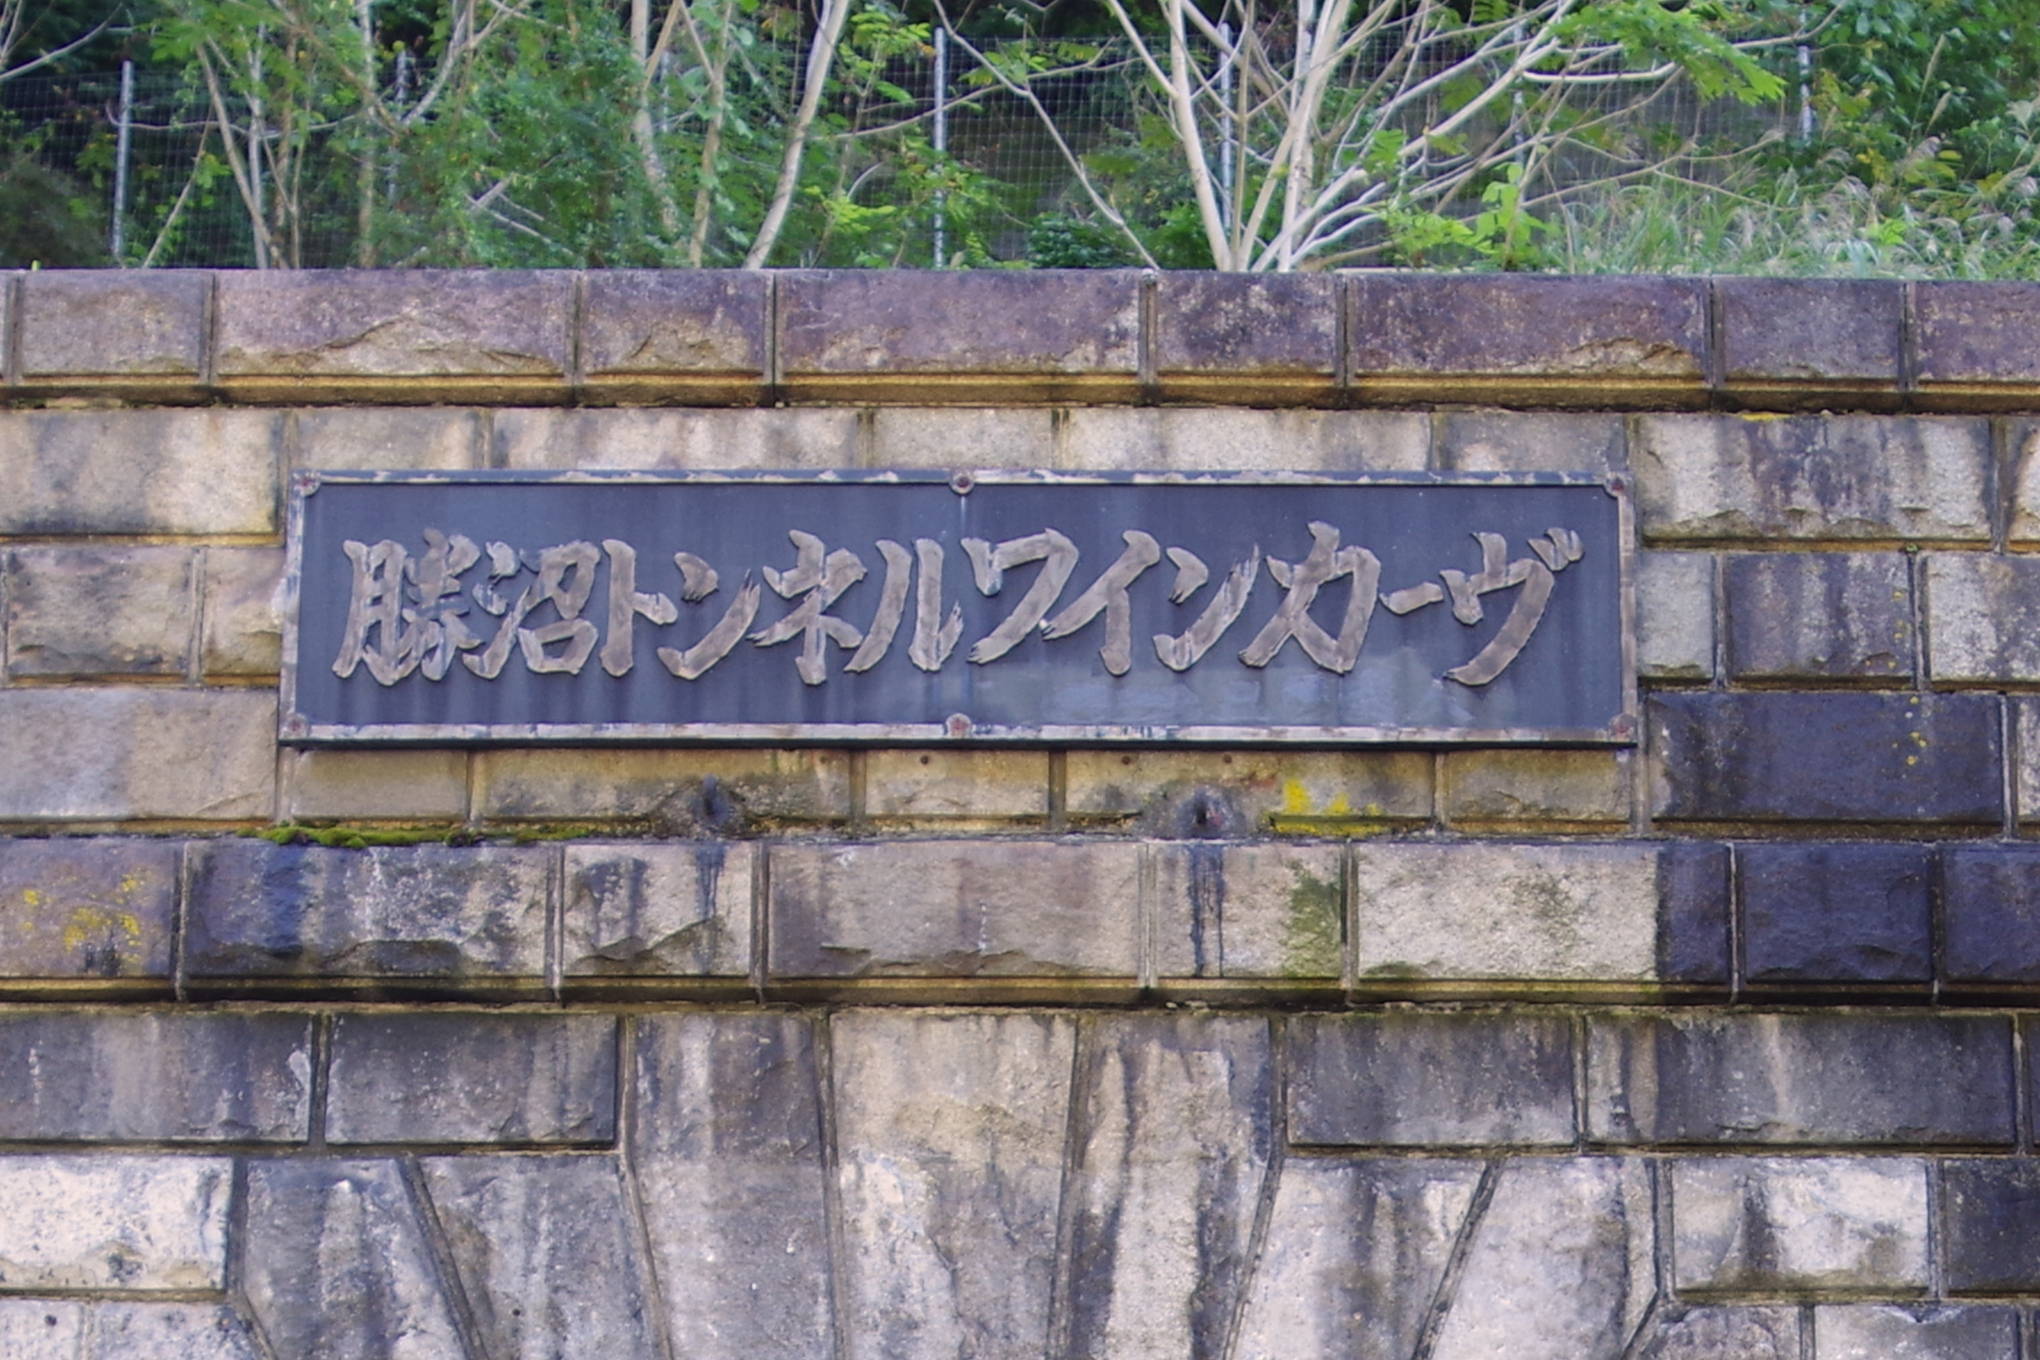 勝沼トンネルワインカーヴ(中央本線旧深沢トンネル)は、鉄道と切っても切れない関係にあった、日本のワインの歴史を雄弁に語る遺構。